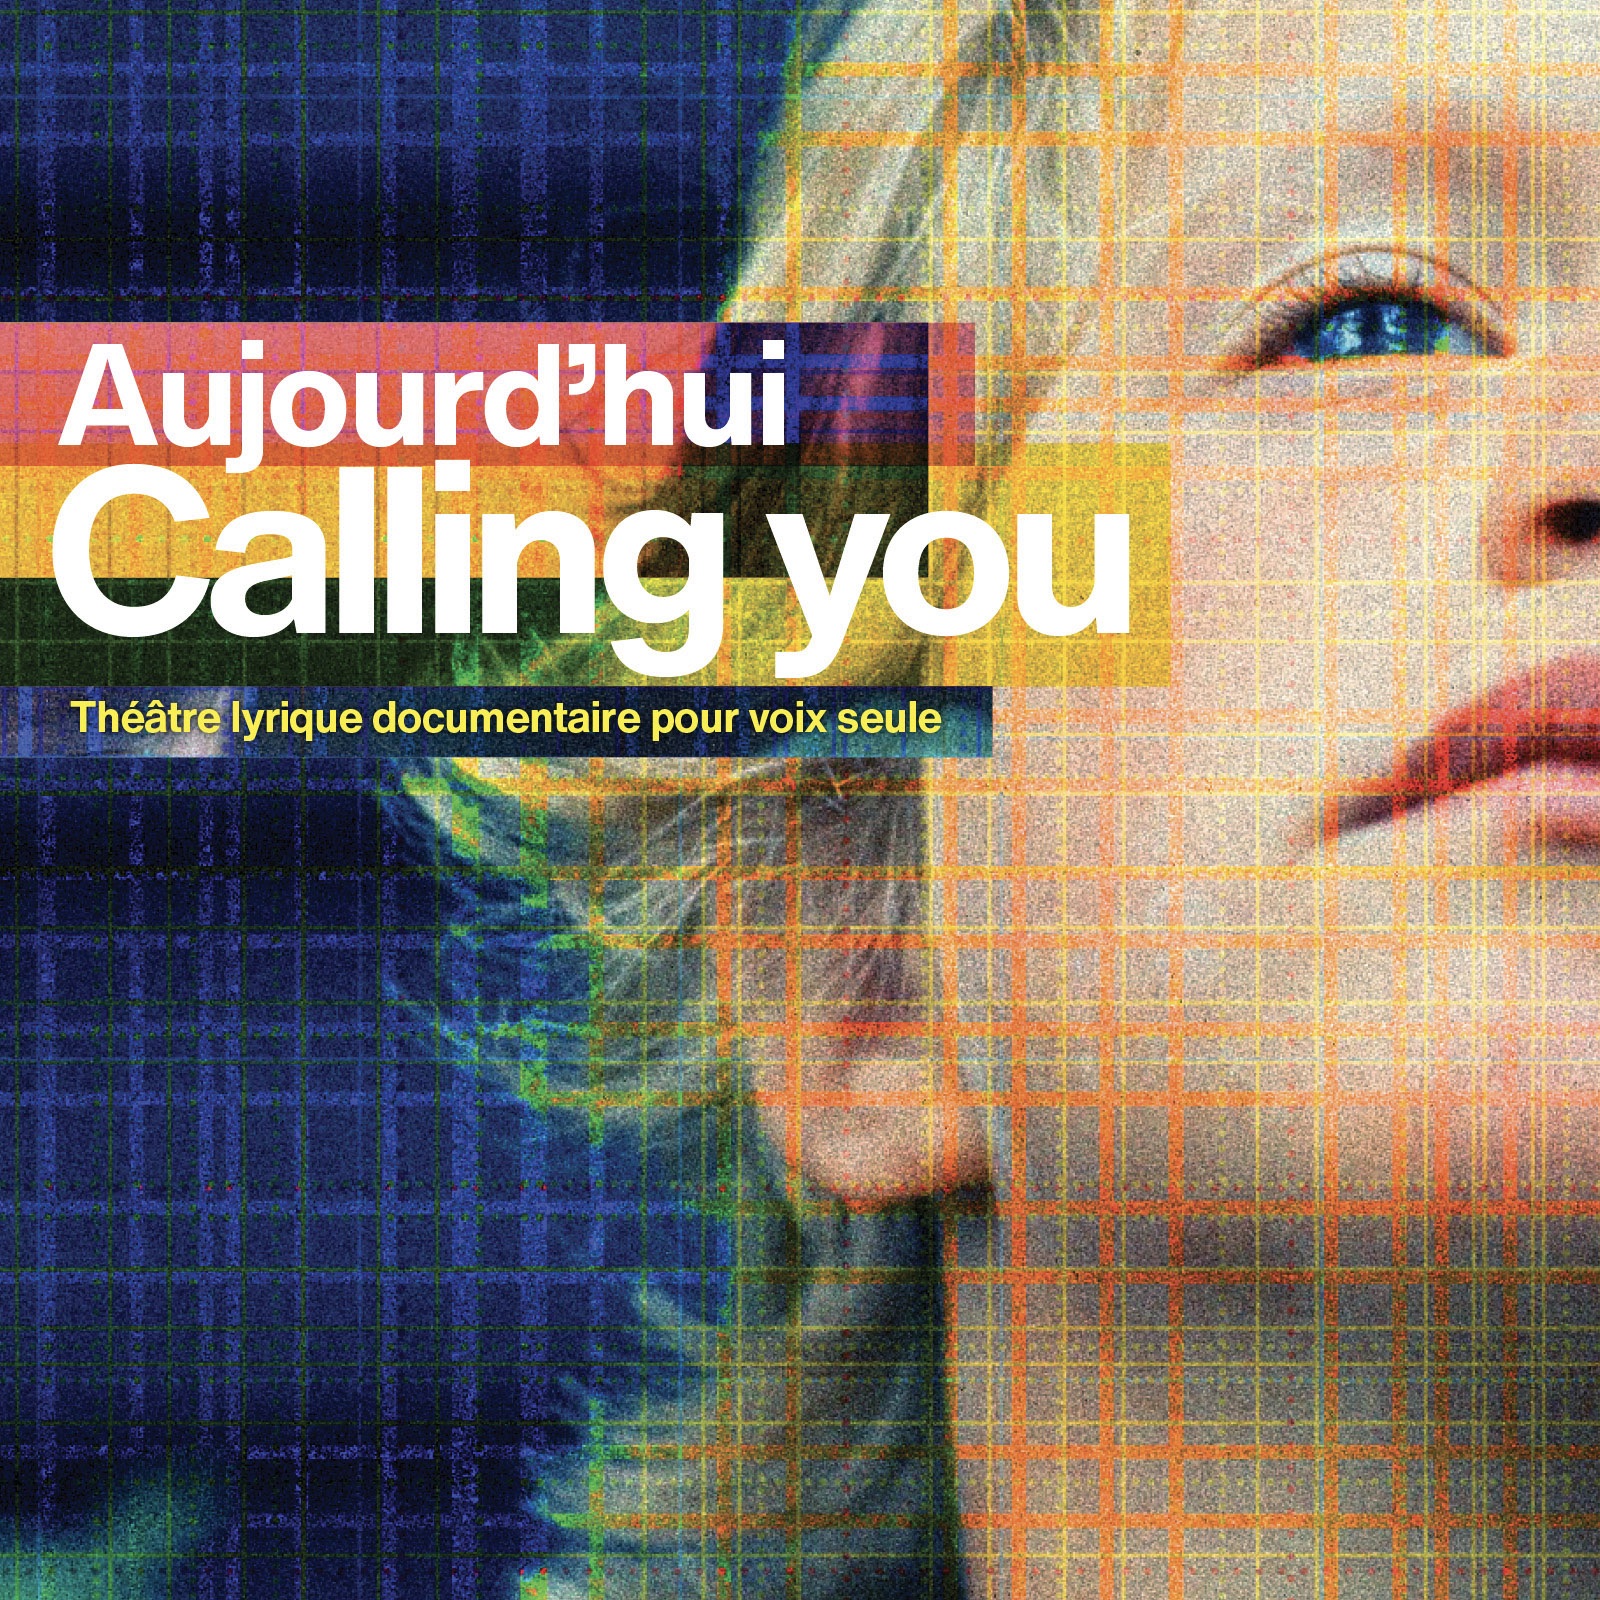 Aujourd’hui – Calling you